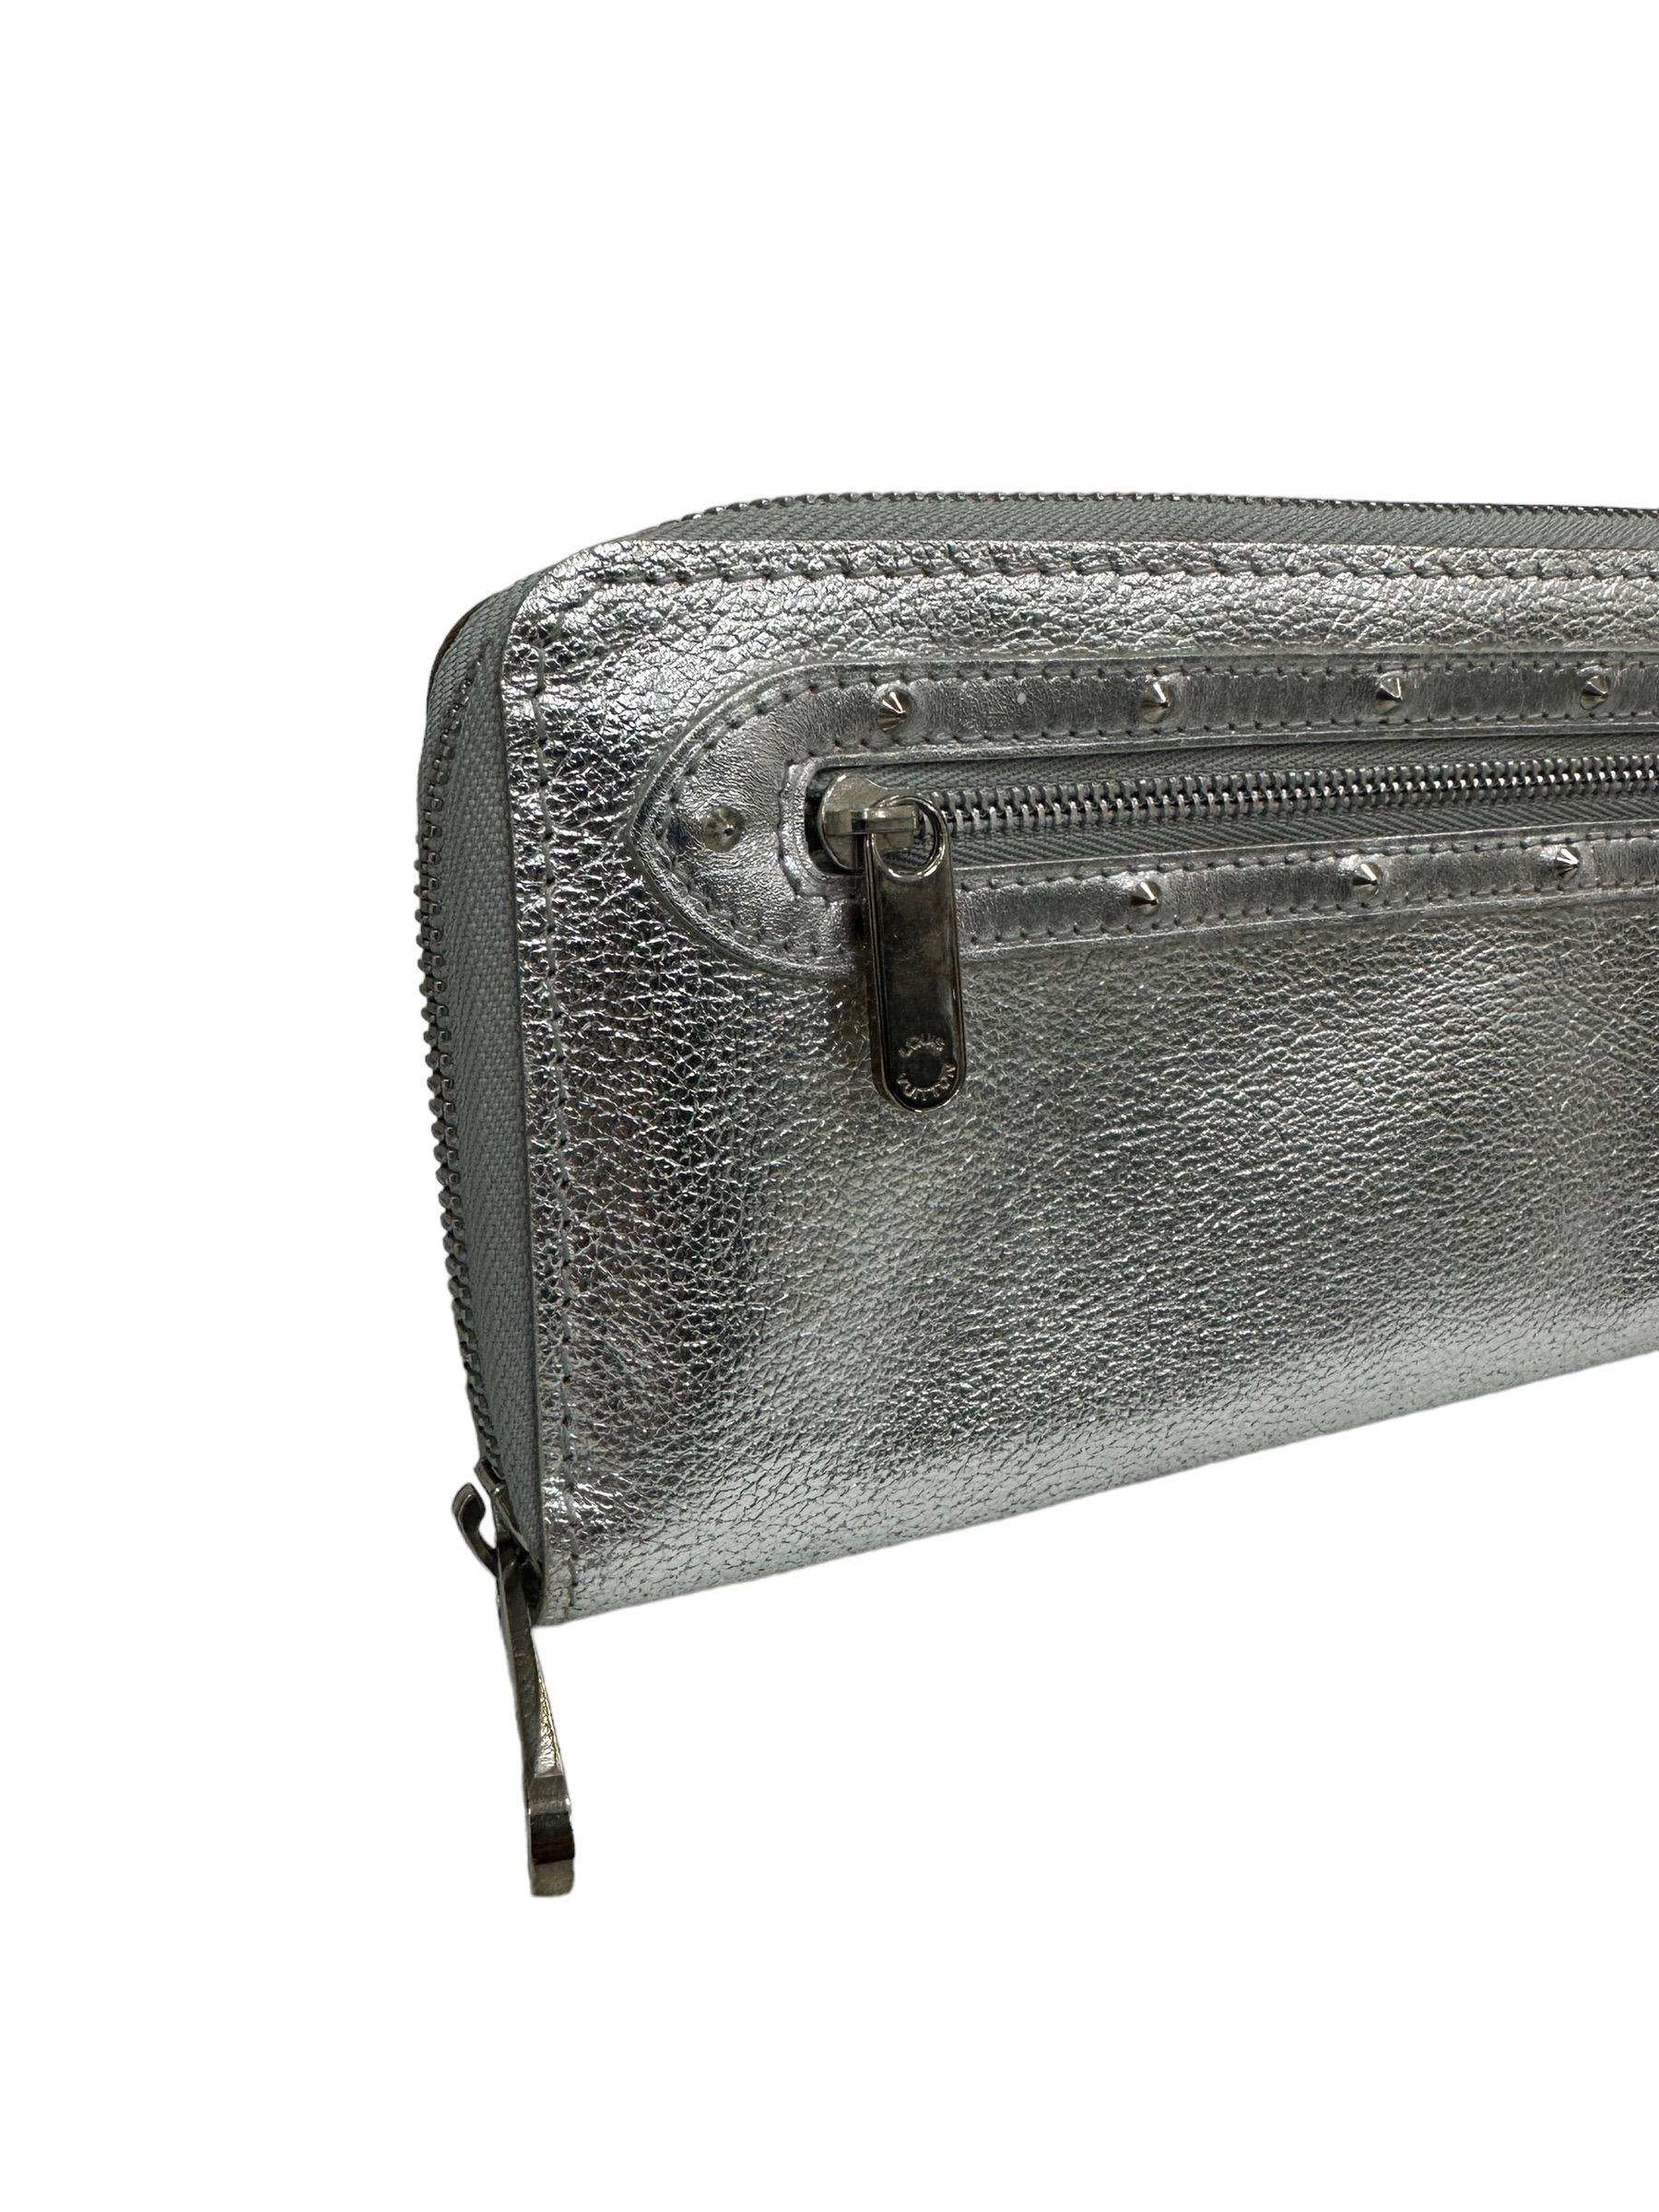 Louis Vuitton Brieftasche, Modell Zippy, Linie Suhali, aus silberfarbenem Leder mit silberner Hardware. Ausgestattet mit einer Reißverschlussöffnung, innen mit silbernem Glattleder gefüttert. Es gibt mehrere Fächer für Karten und ein zentrales Fach